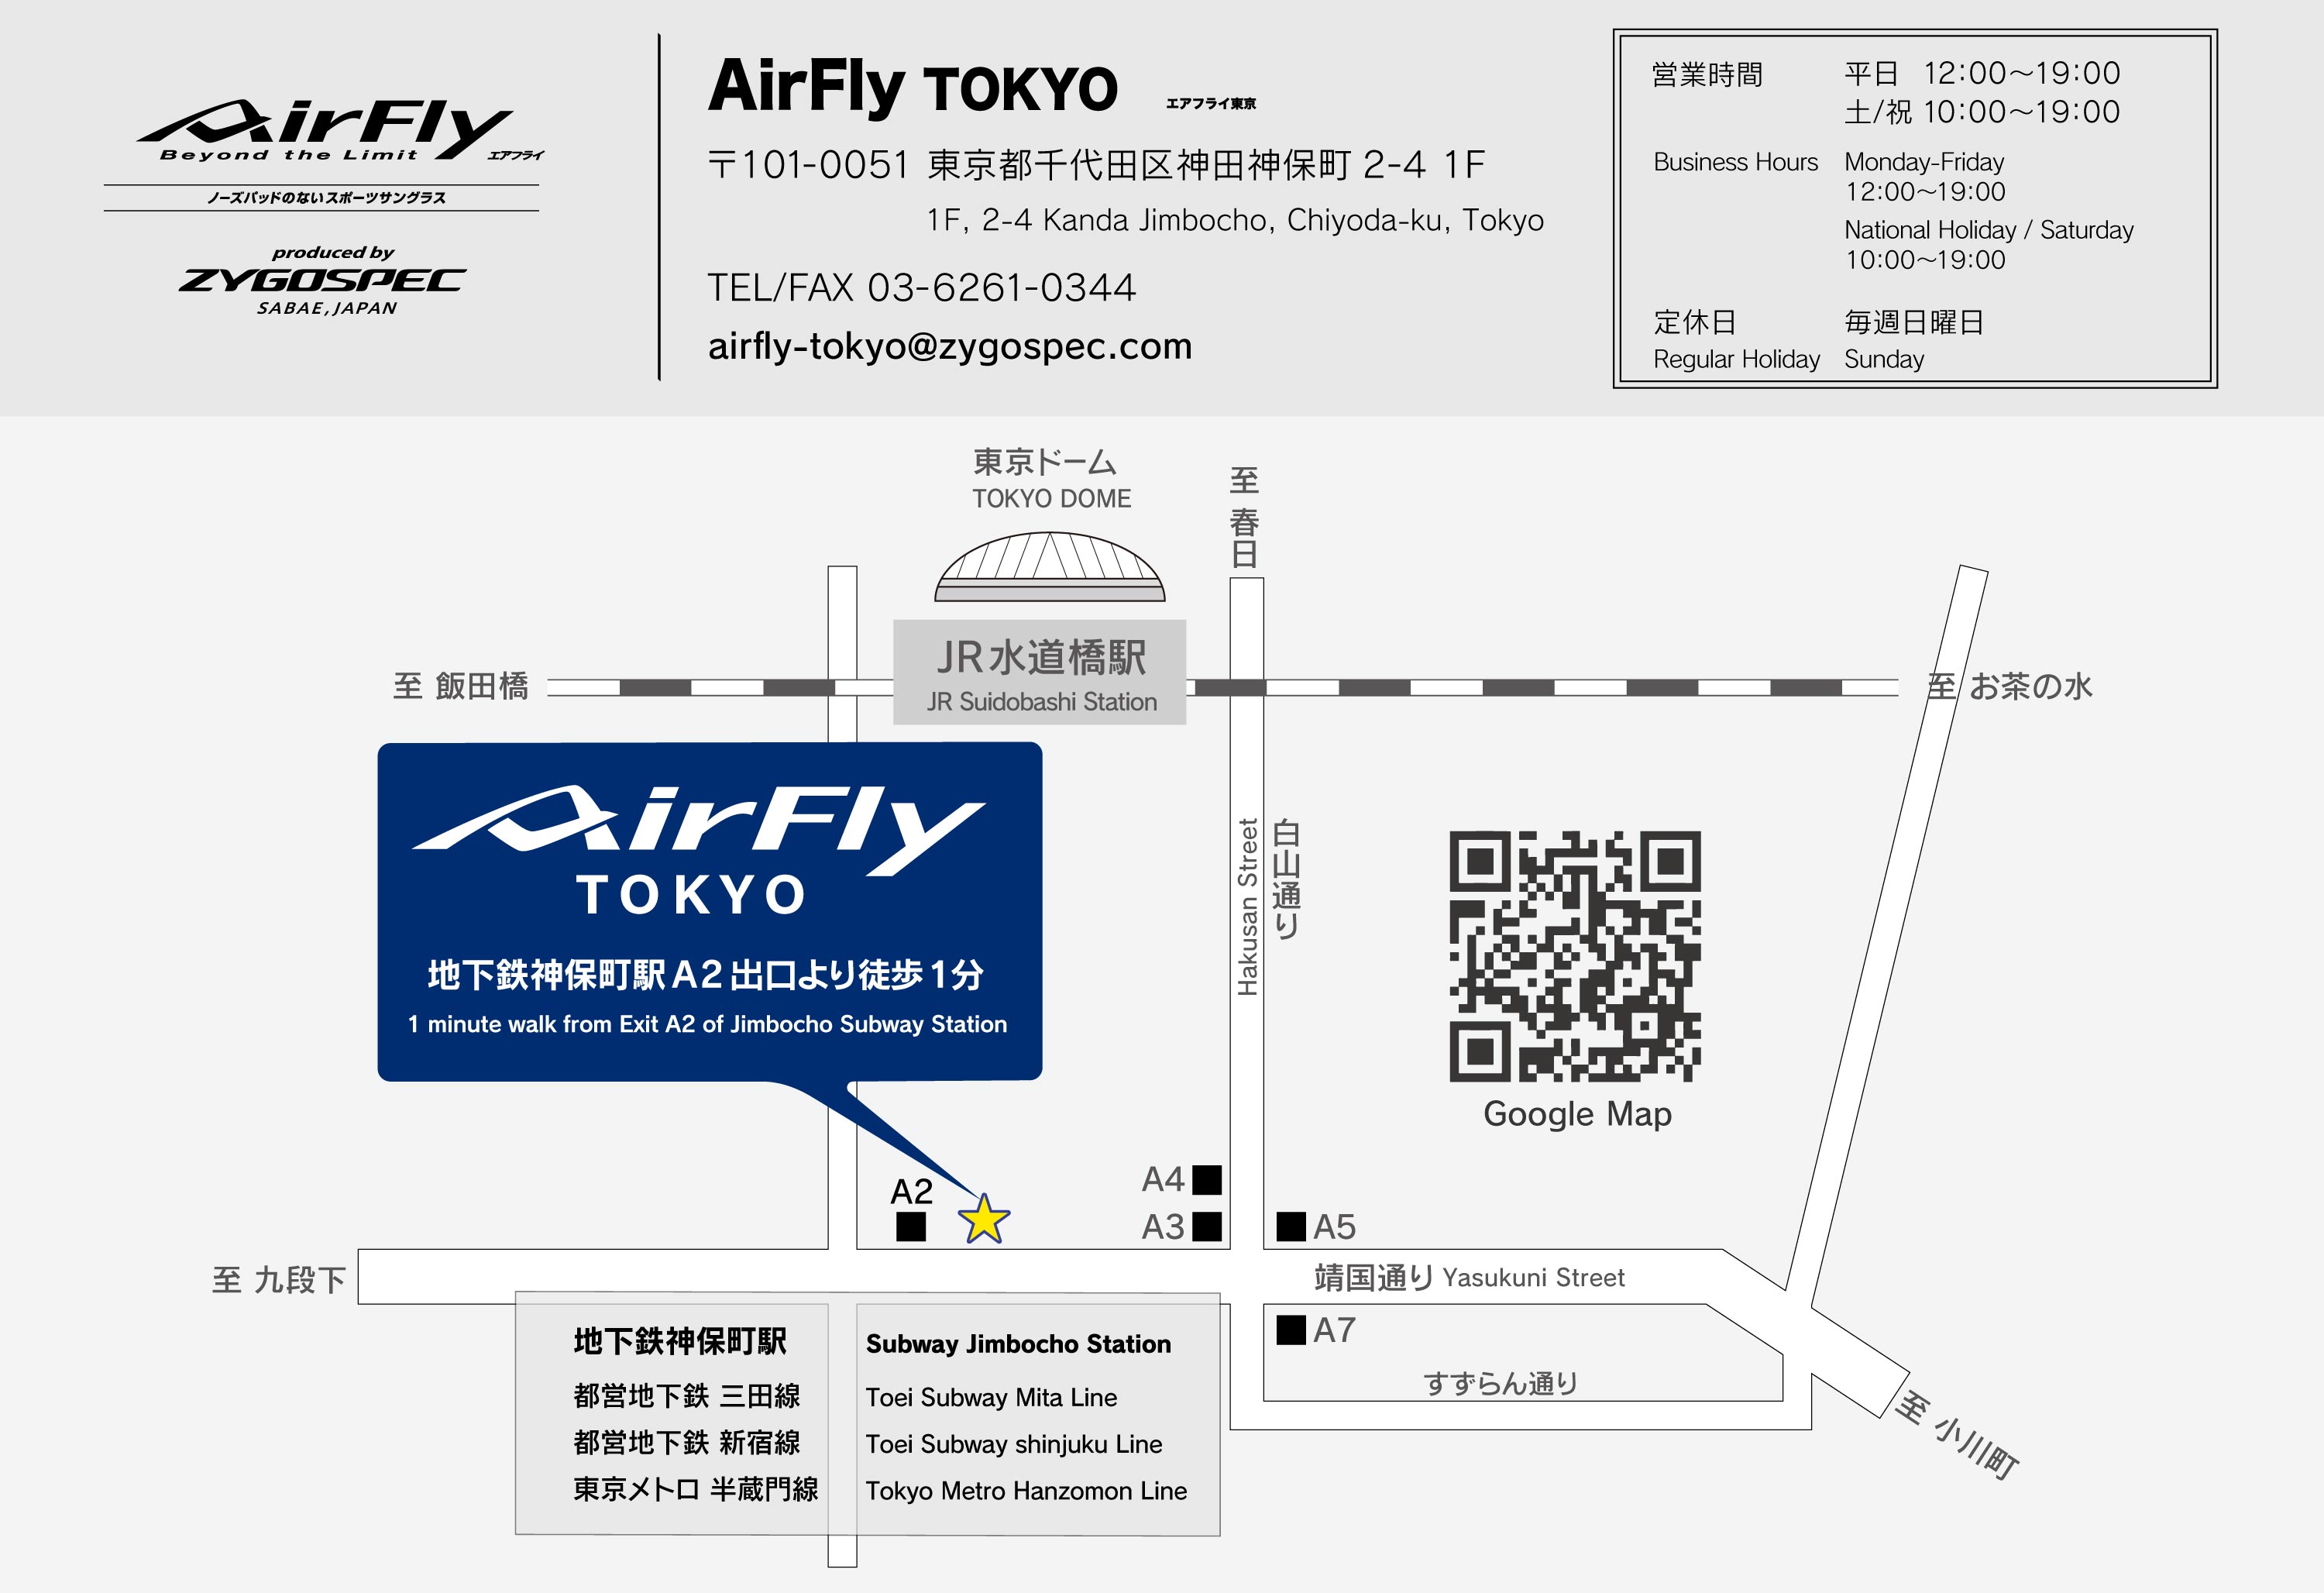 エアフライ東京 AirFlyTOKYO 初の直営店 